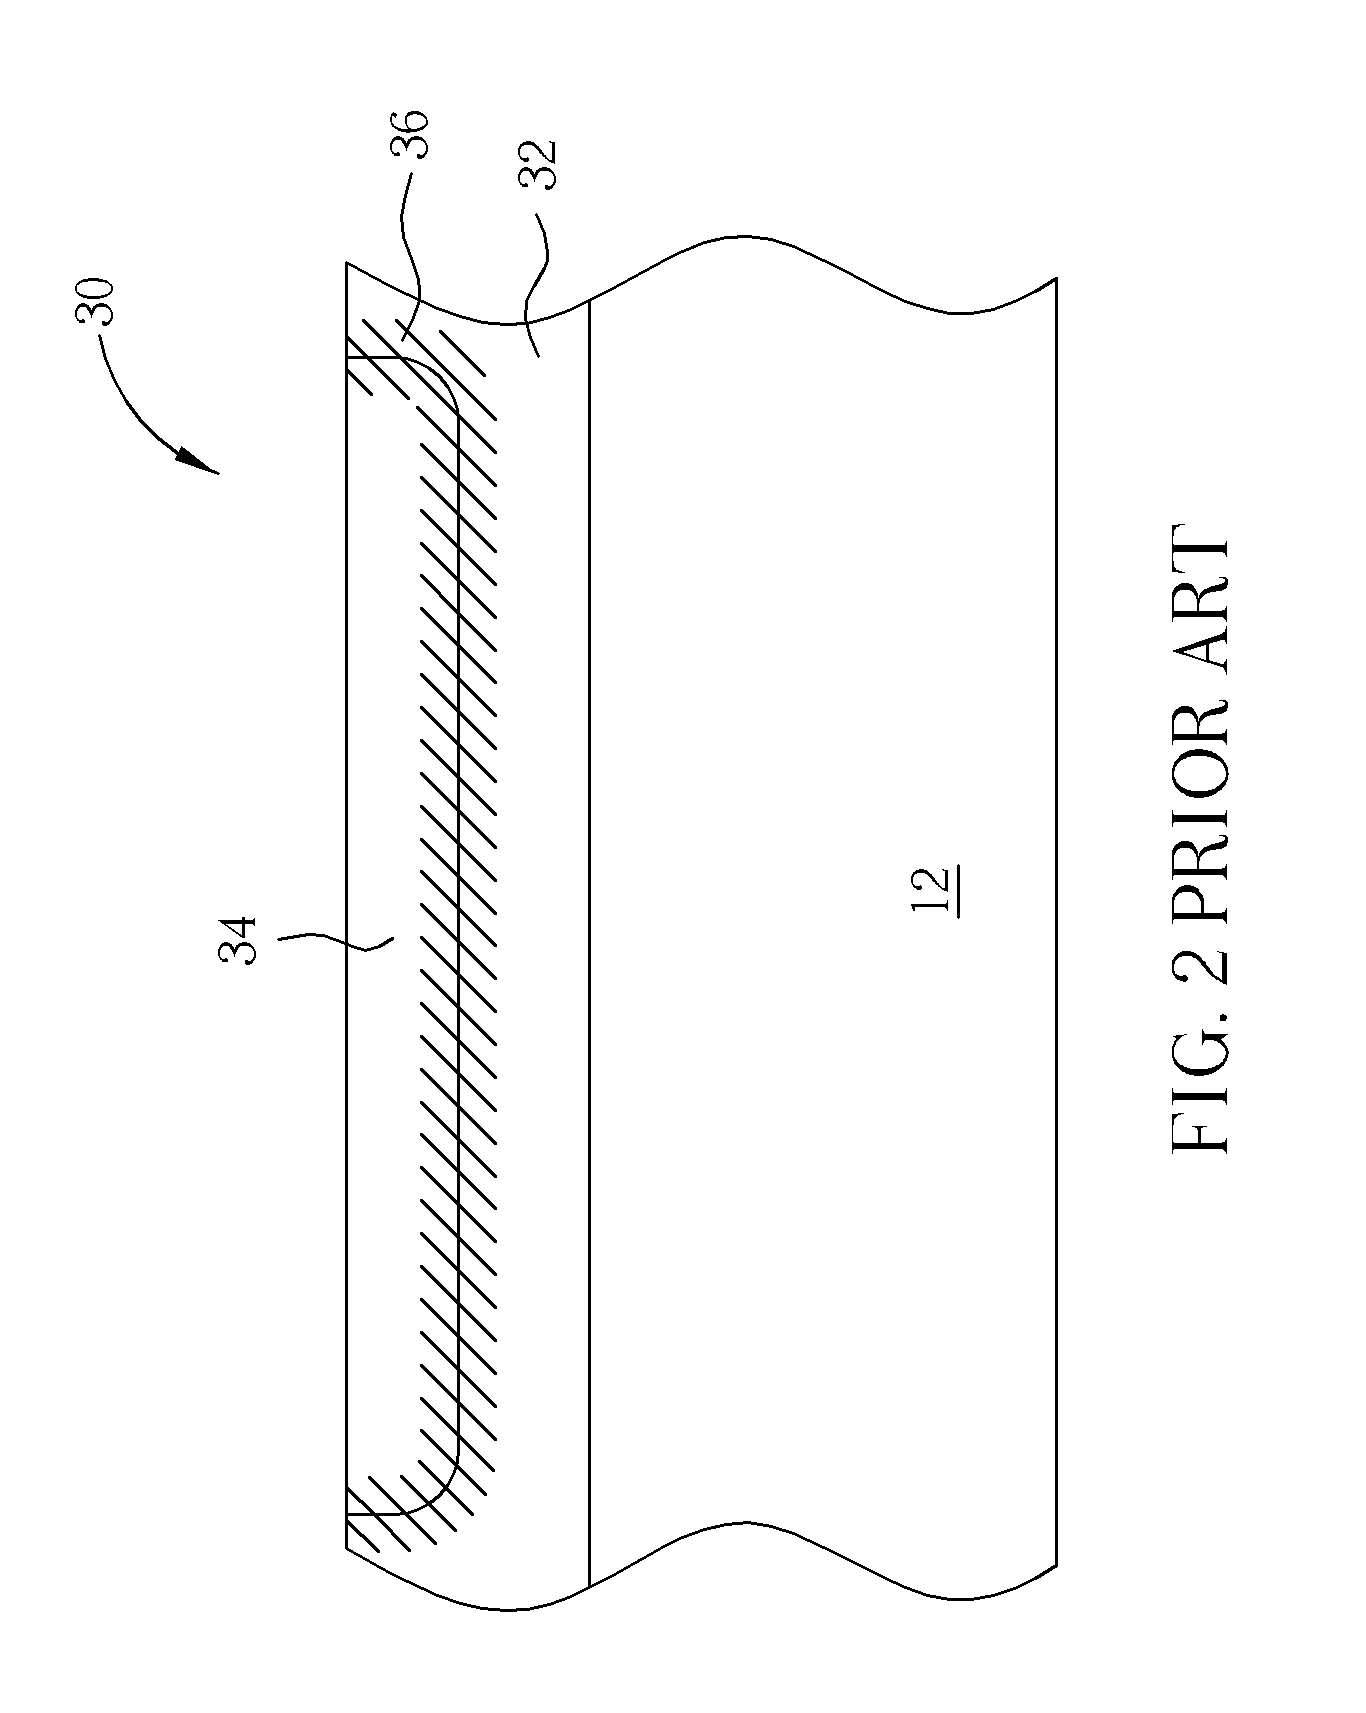 Photodiode of an image sensor and fabricating method thereof